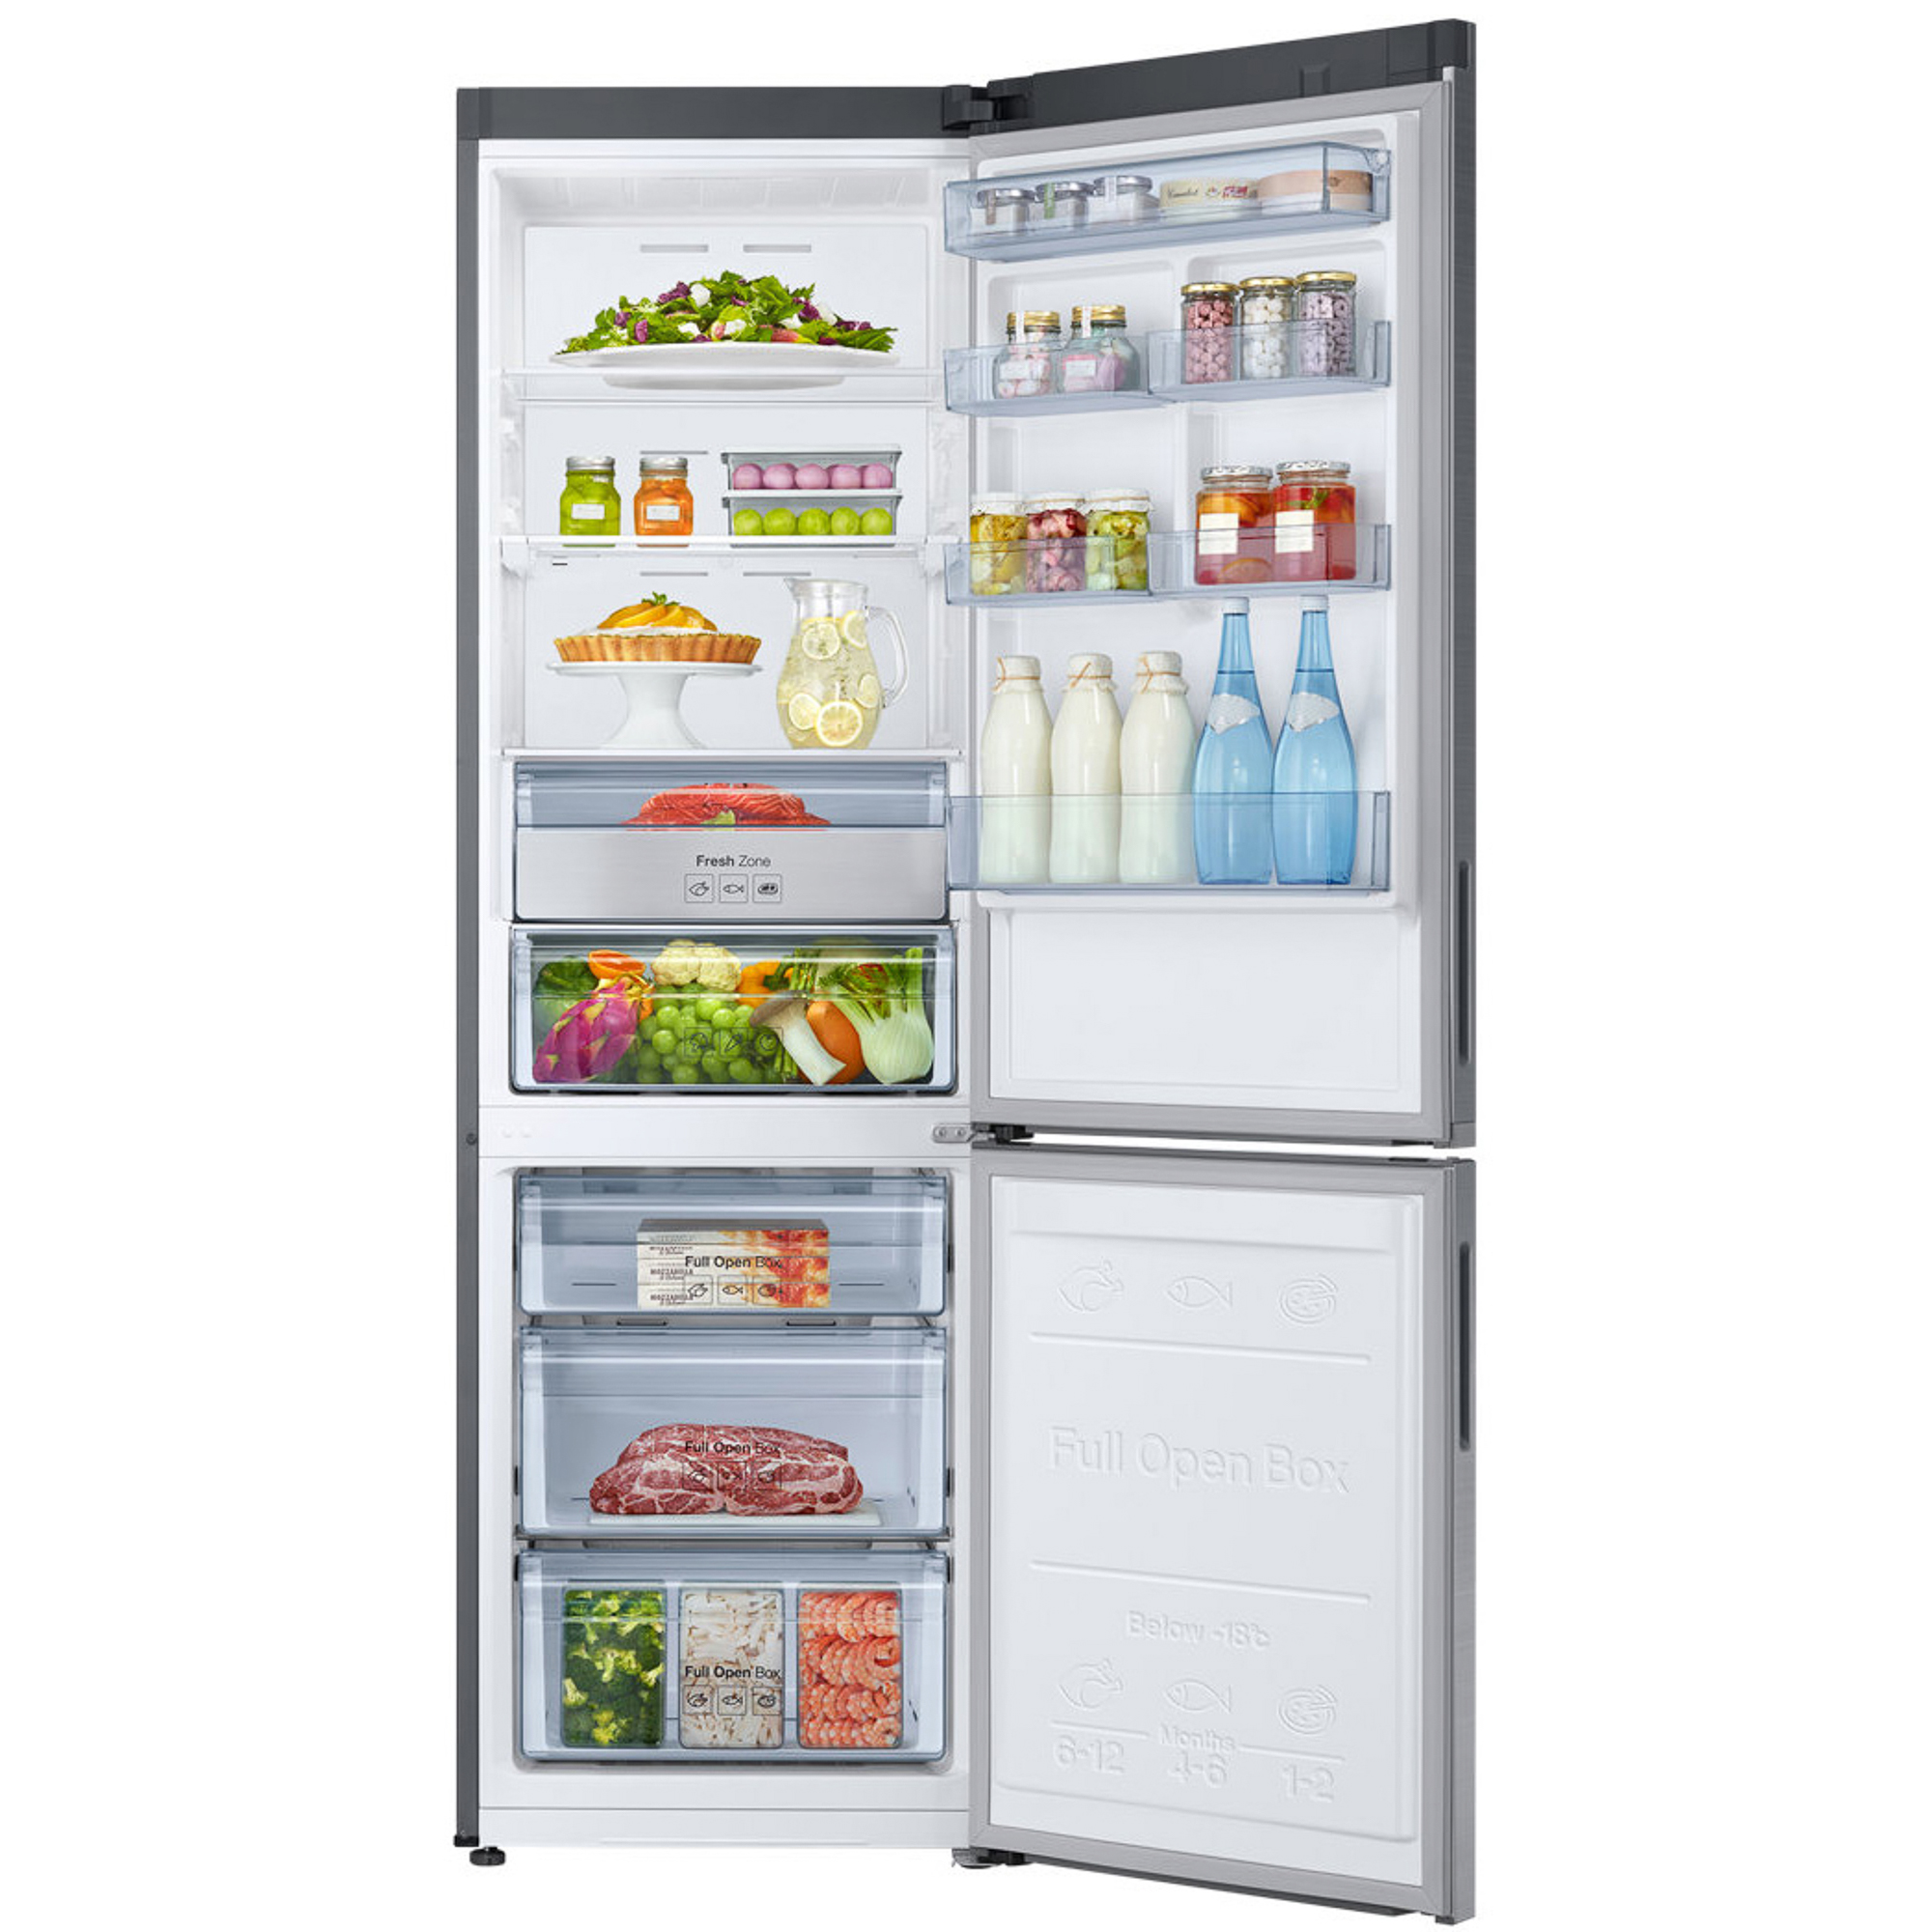 Холодильник Samsung RB34K6220S4 Silver, цвет серебристый RB34K6220S4/WT - фото 5